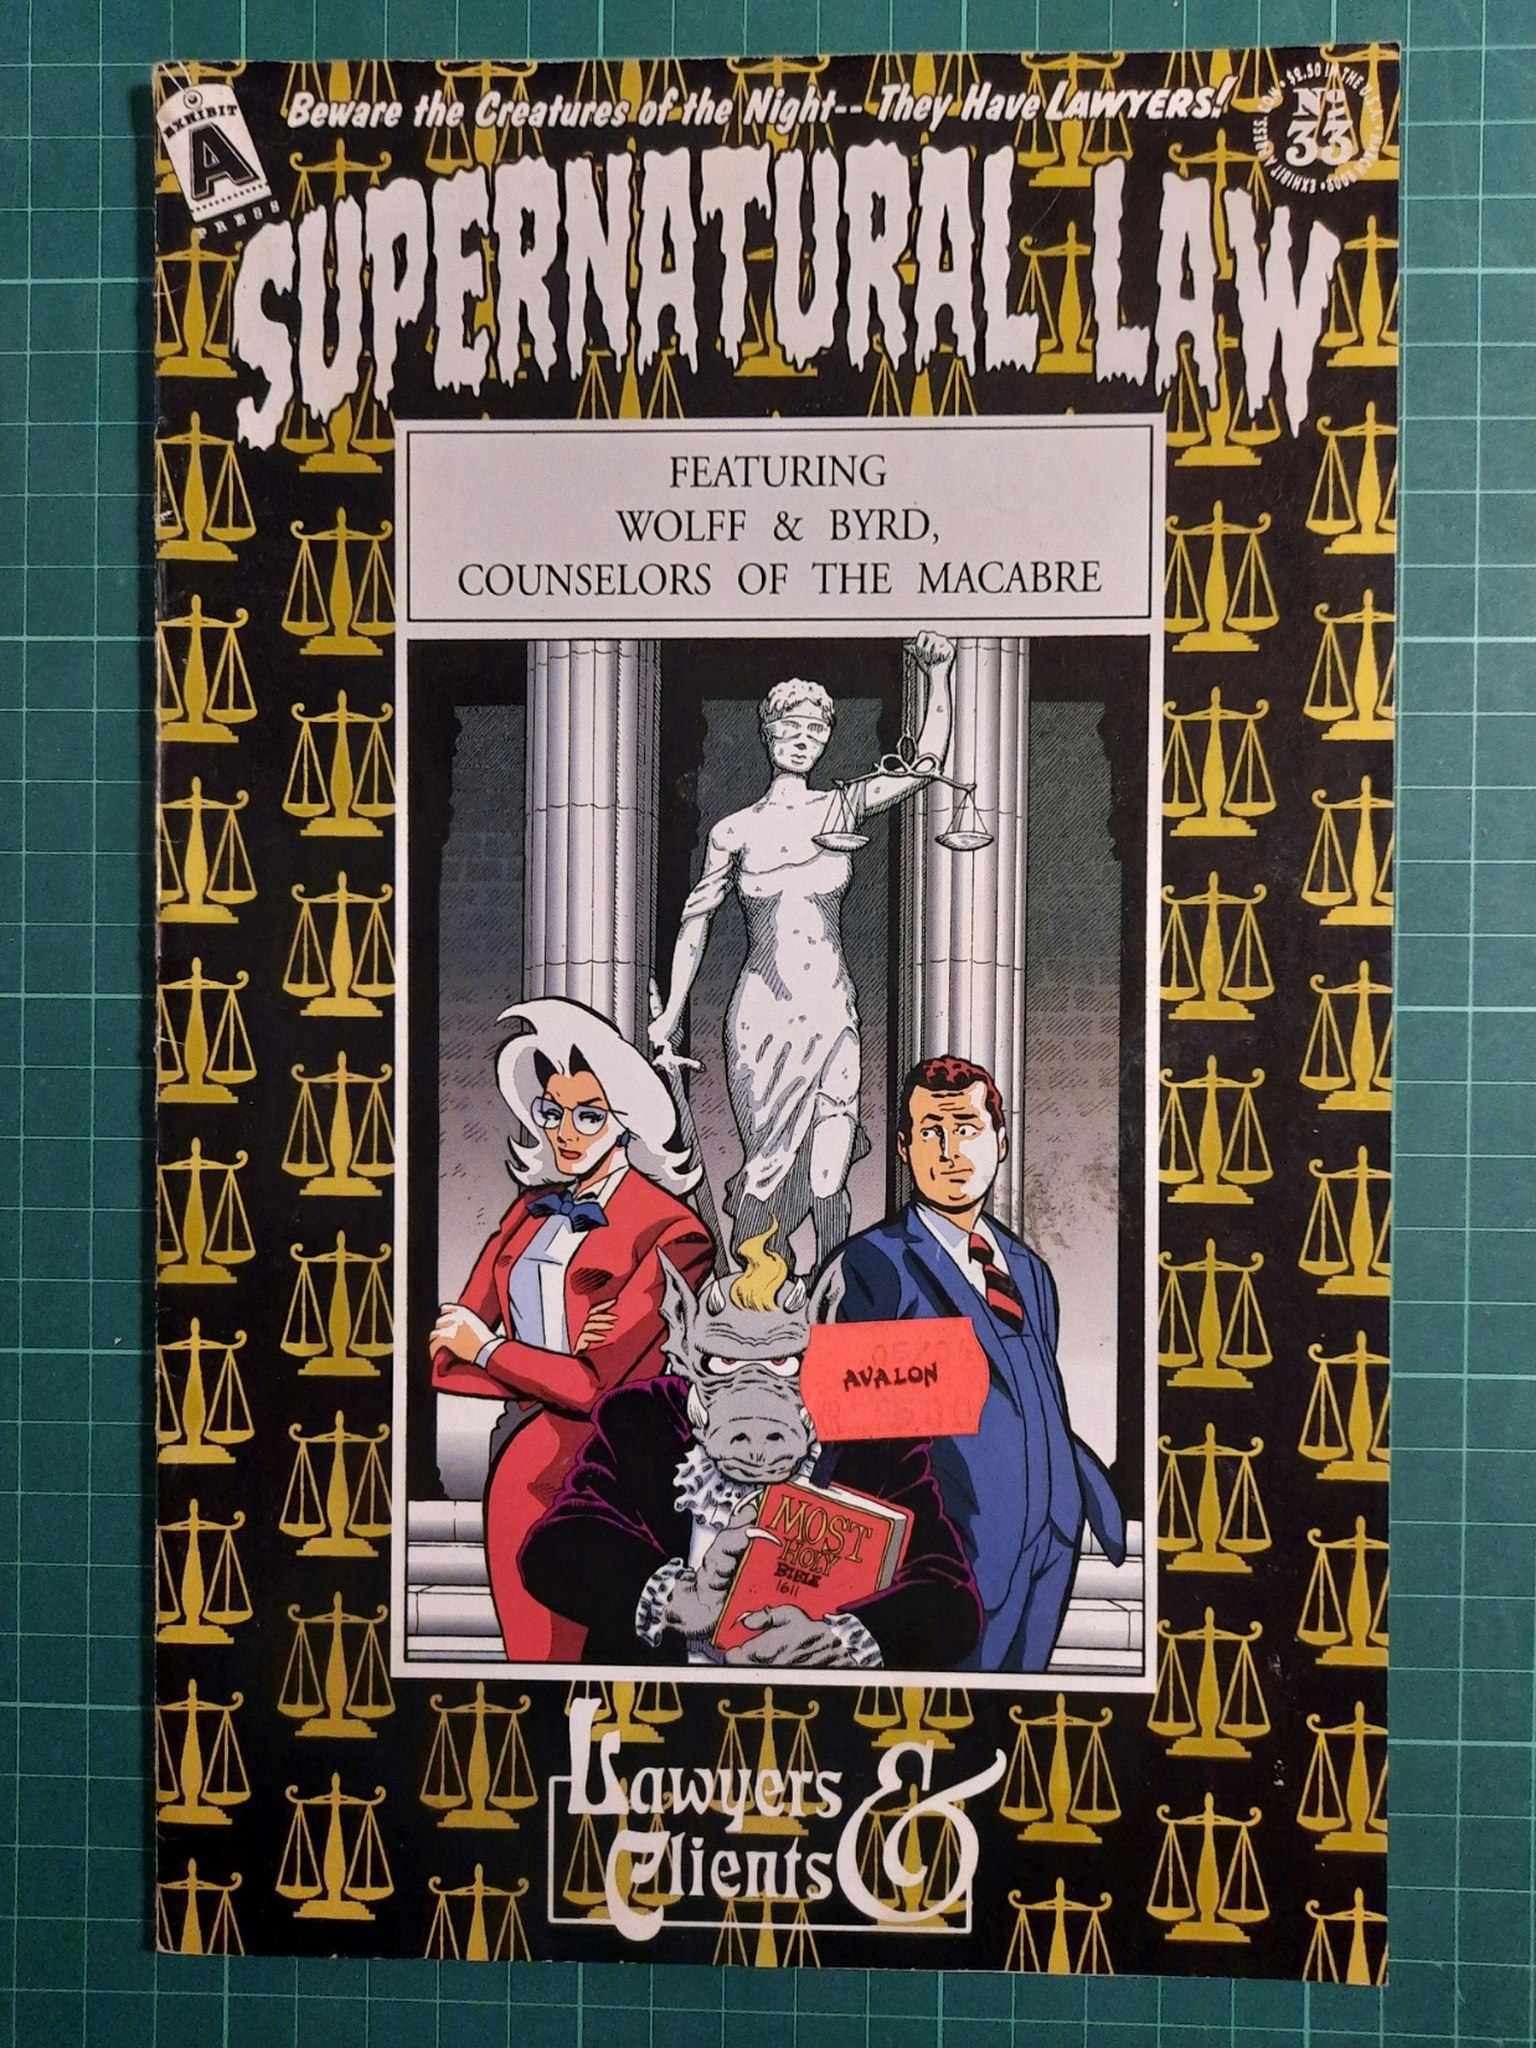 Supernatural law #33